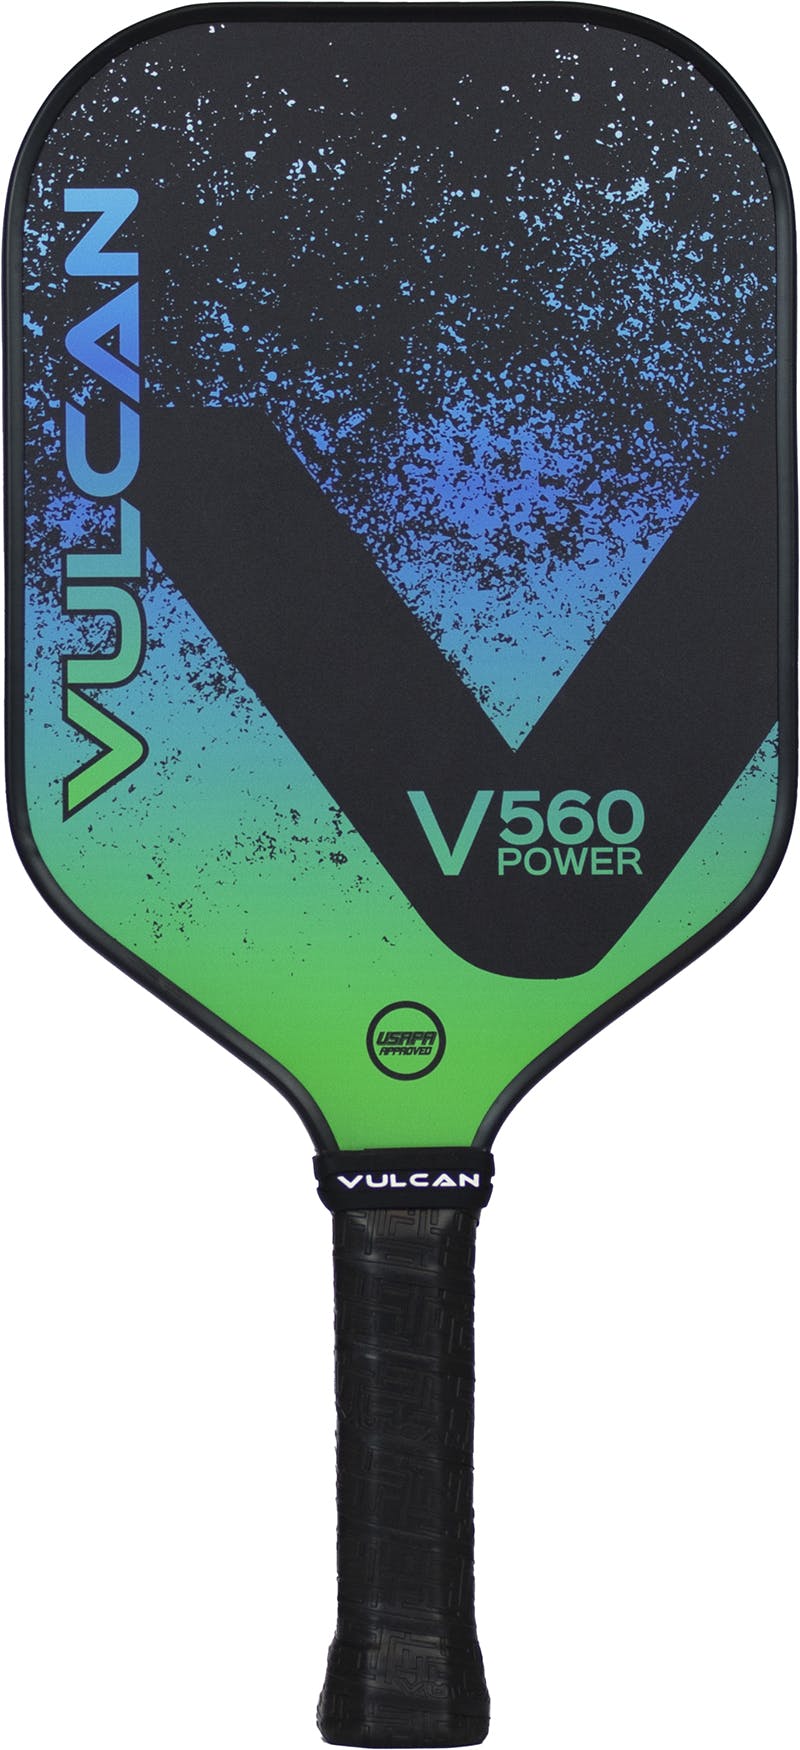 Vulcan V560 Power Pickleball Paddle